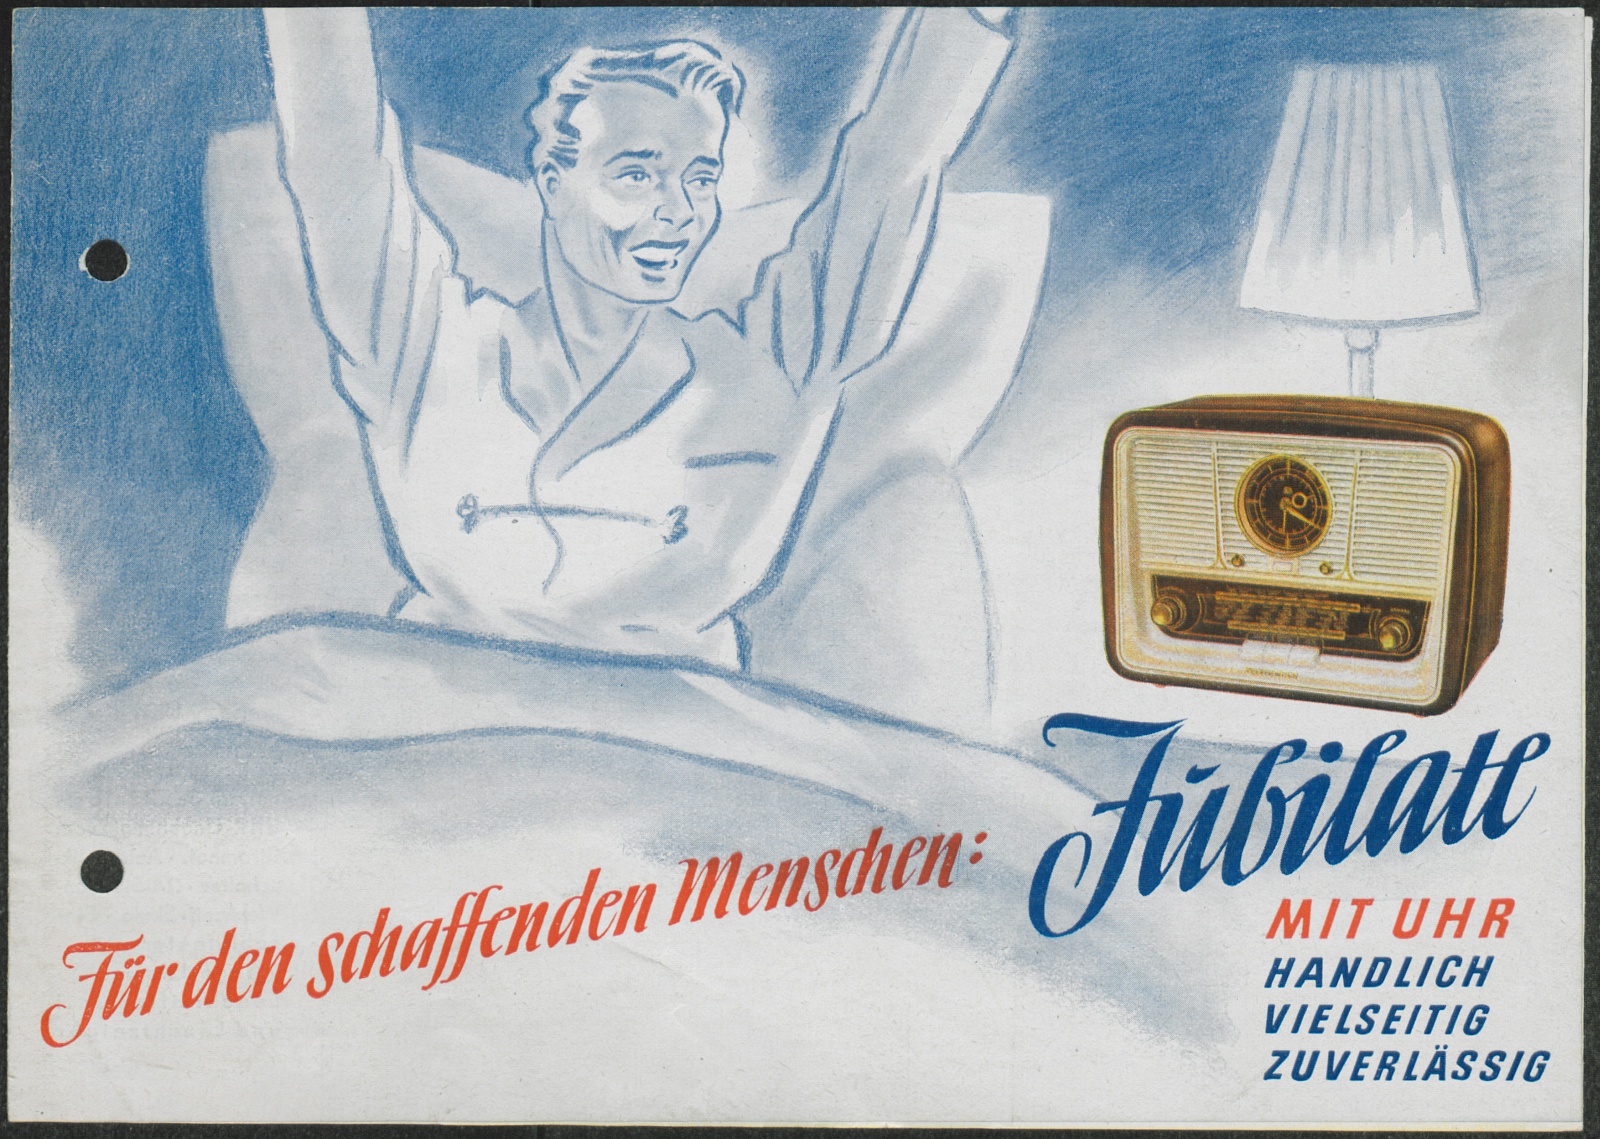 Werbeprospekt: Für den schaffenden Menschen : Jubilate mit Uhr (Stiftung Deutsches Technikmuseum Berlin CC0)